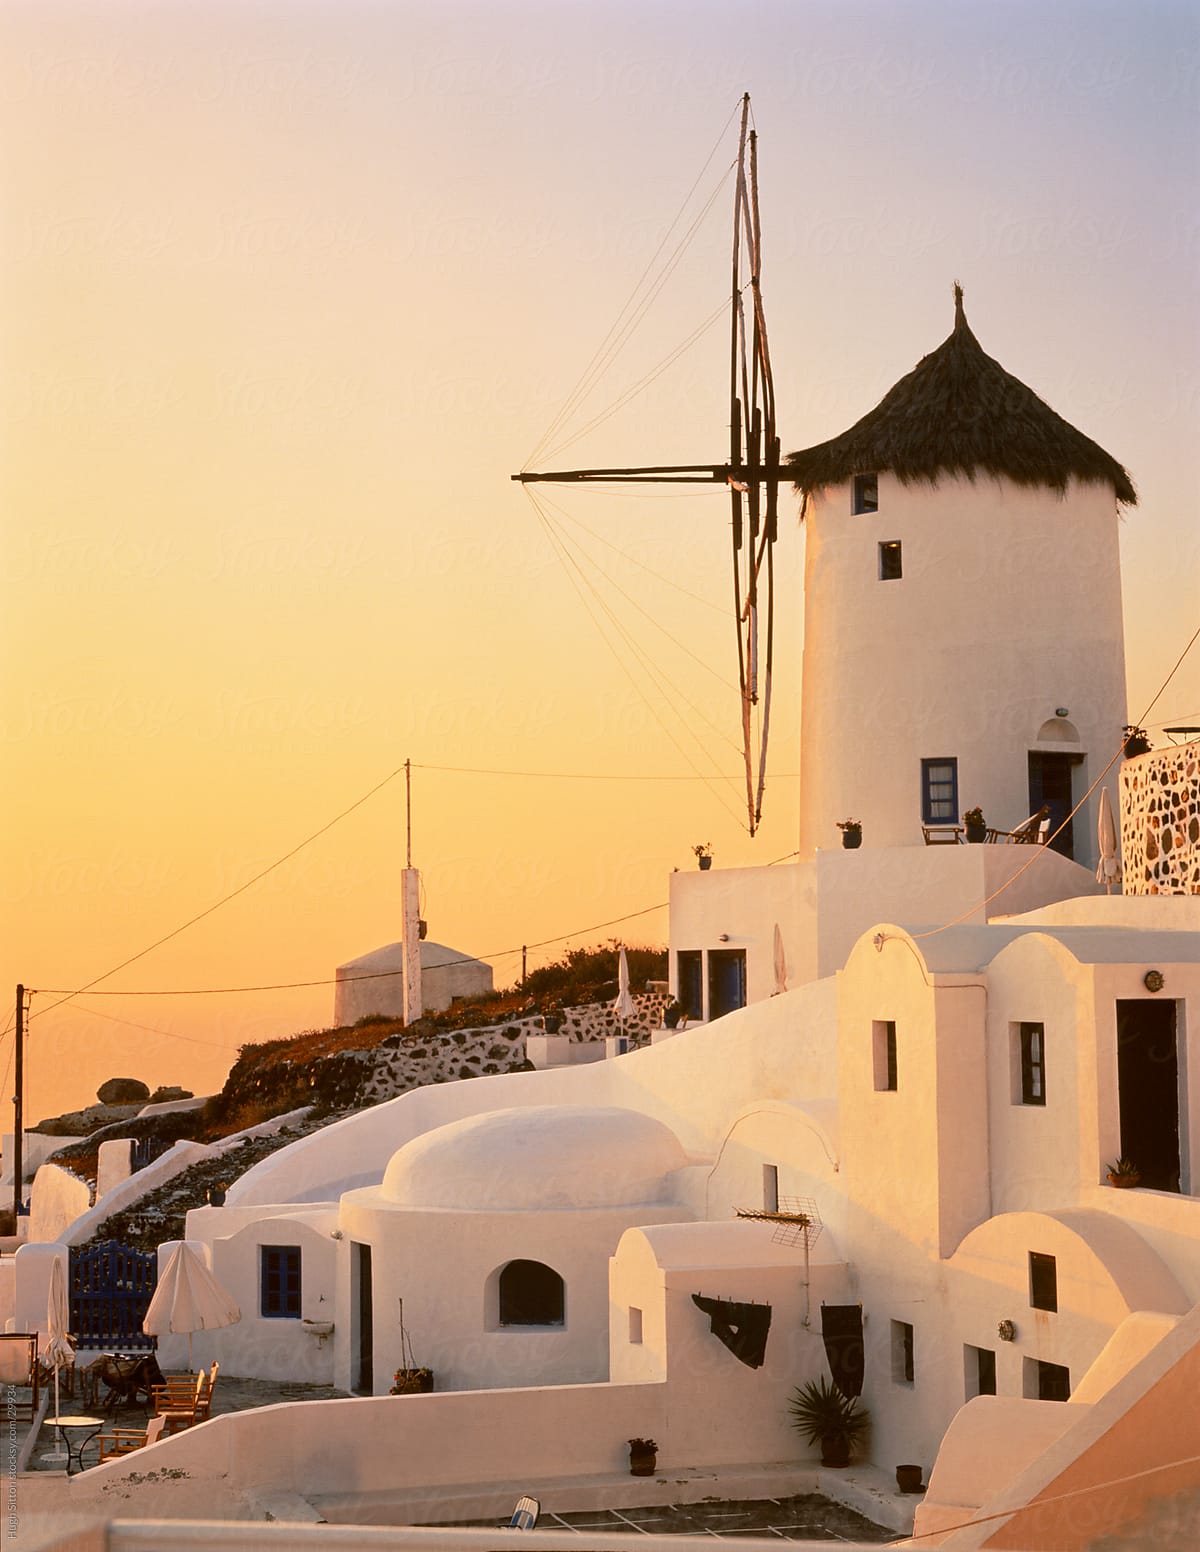 Windmill of Oia at sunset. Santorini. Greece.